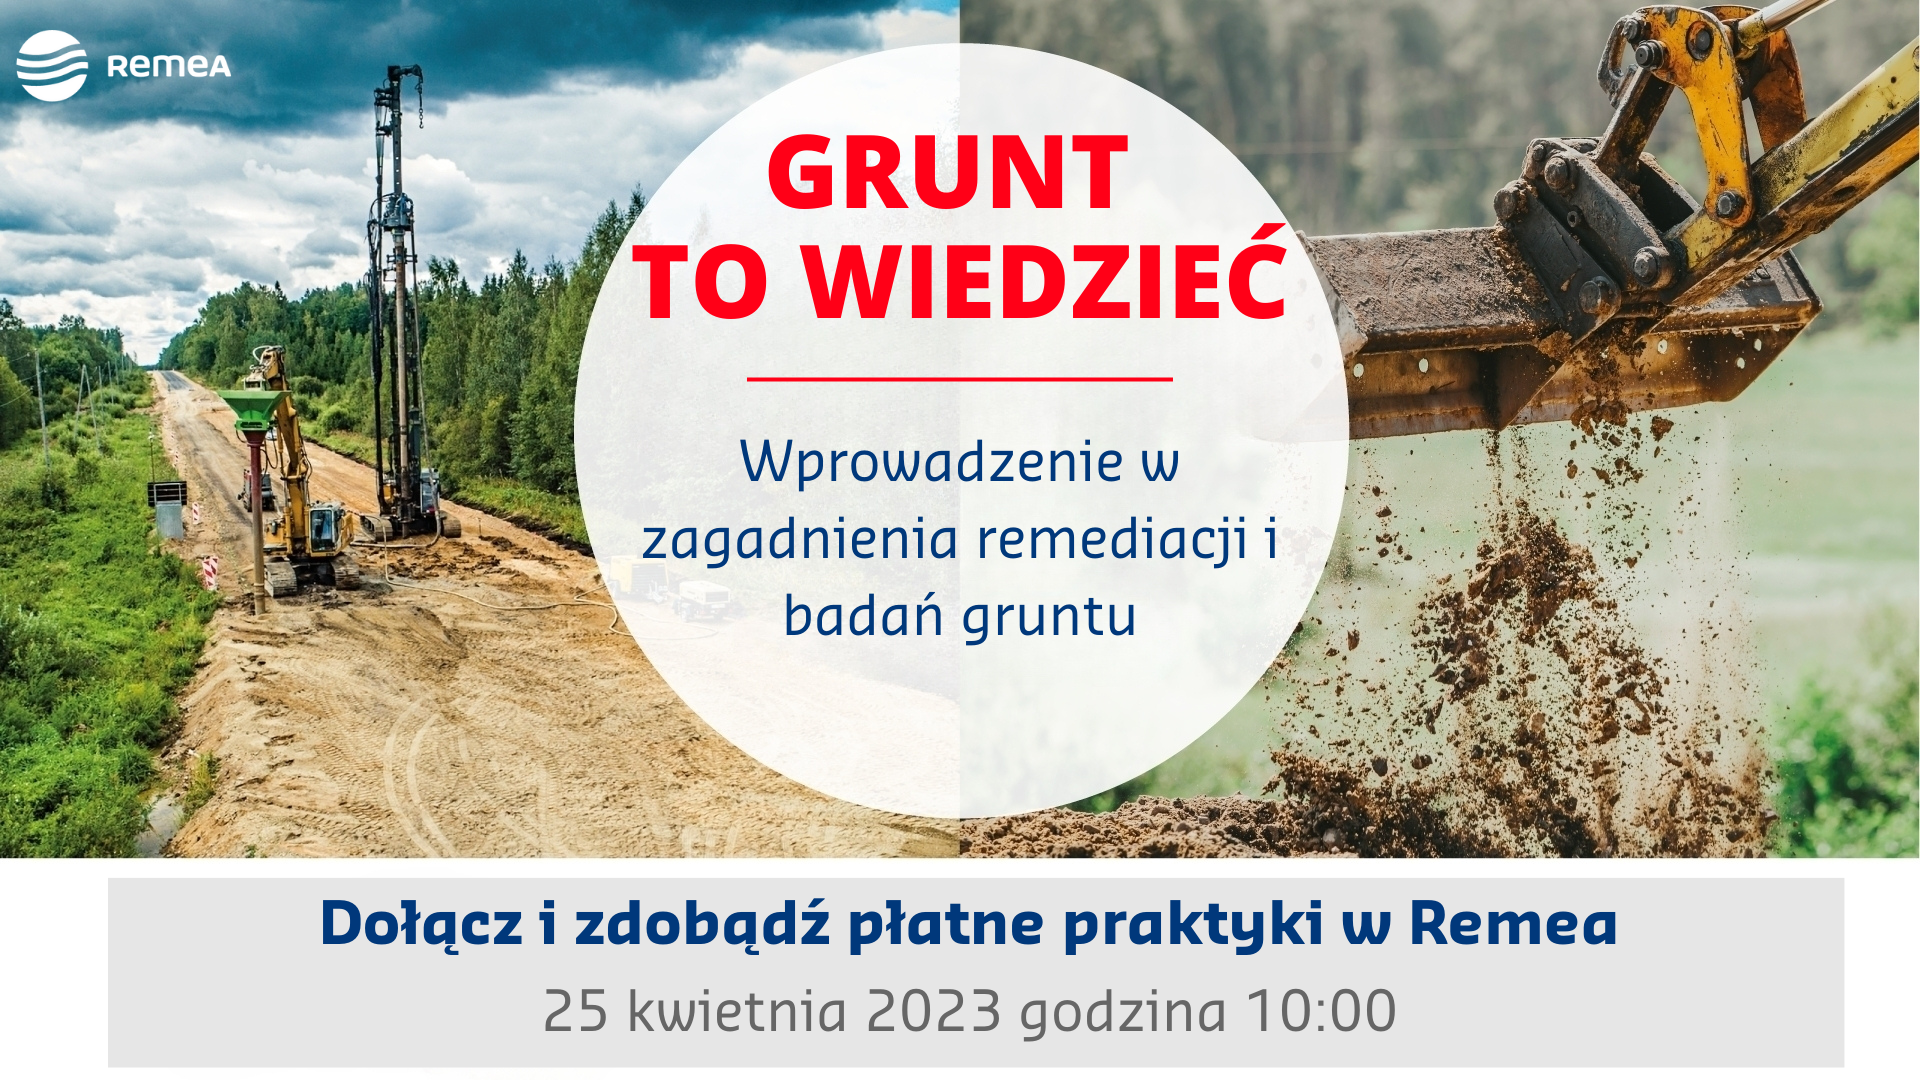 Letnie praktyki w Remea. Dołącz do naszego webinaru i zgarnij płatne praktyki wakacyjne w wybranej lokalizacji w Polsce.